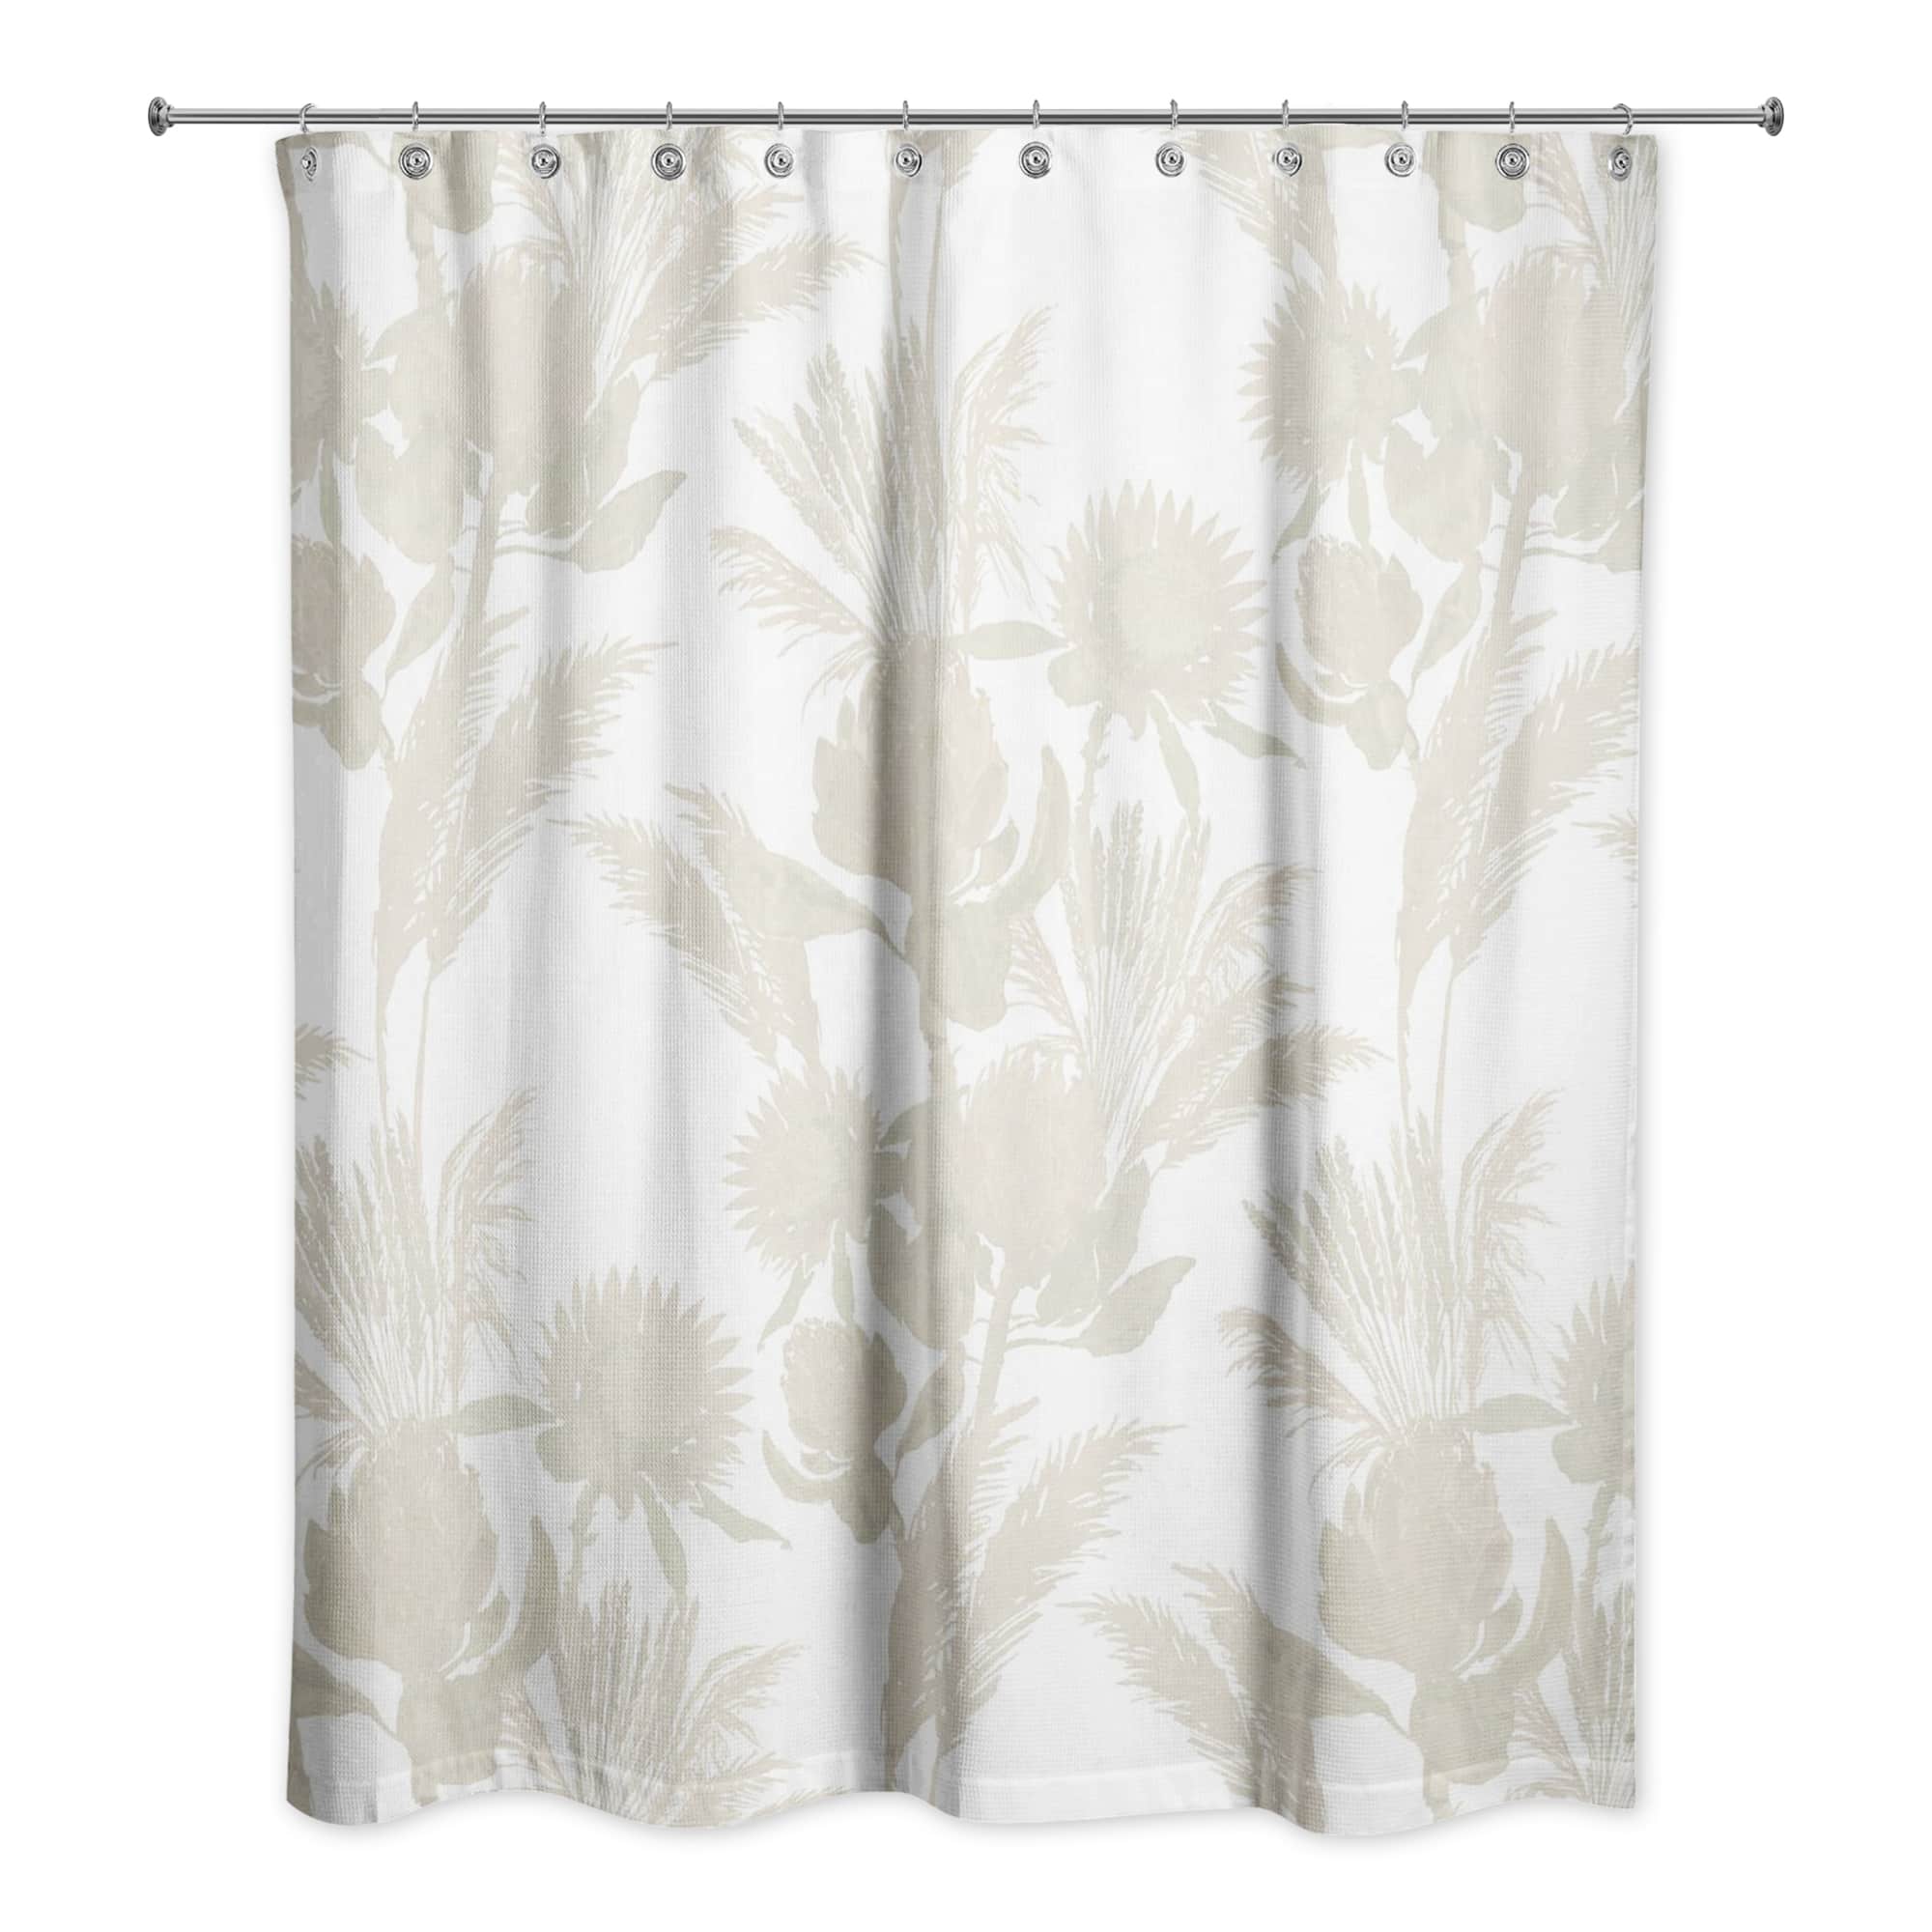 Cream Tones Protea Blooms Shower Curtain